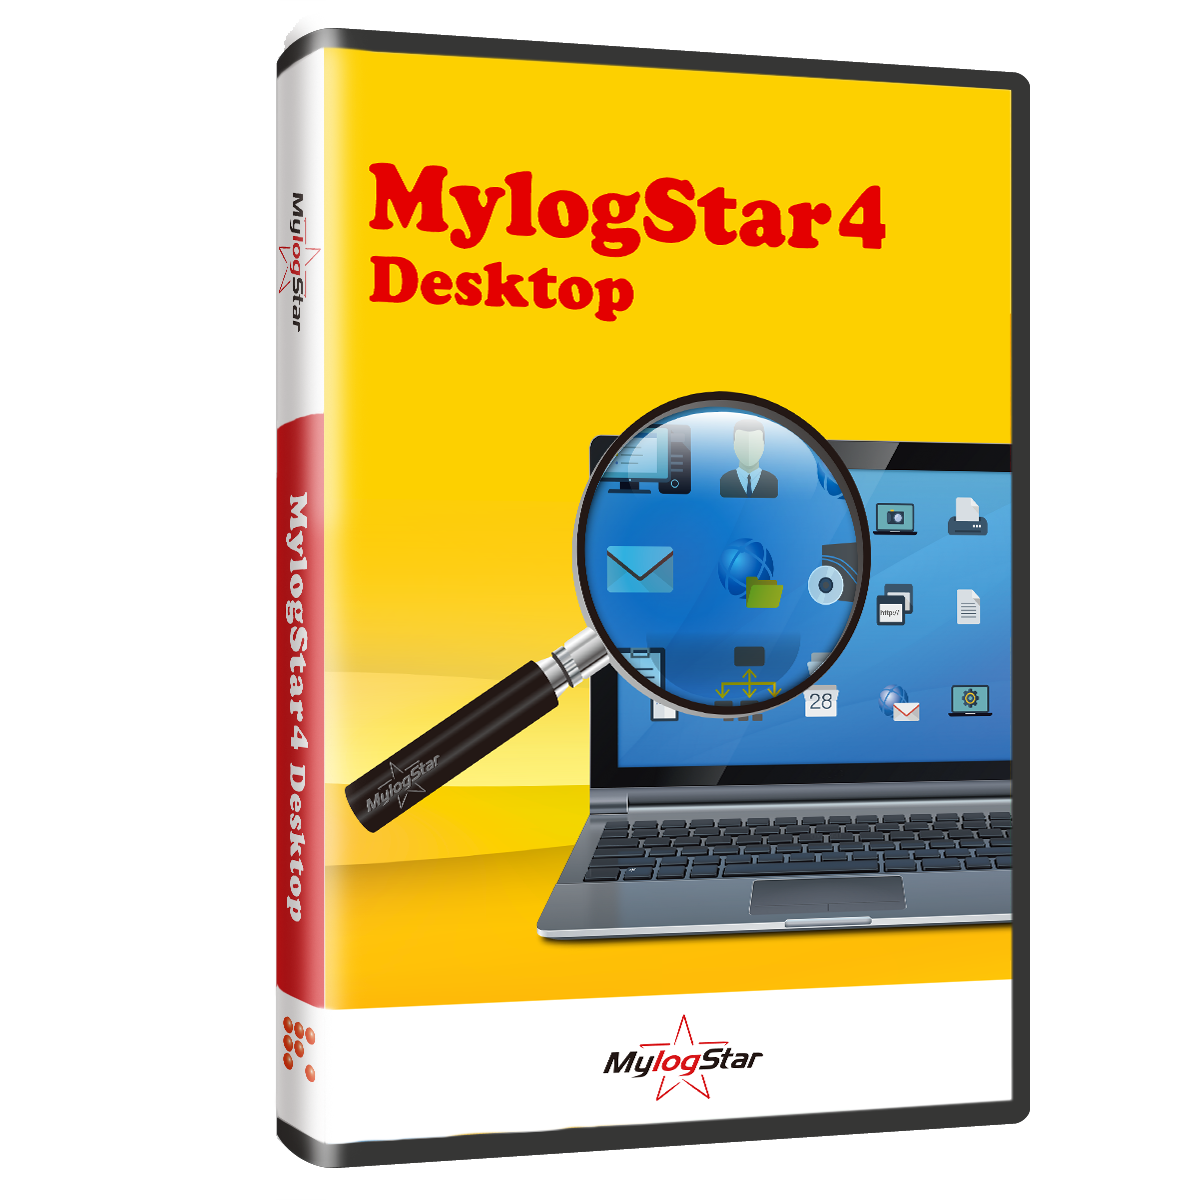 MylogStar 4 Desktop